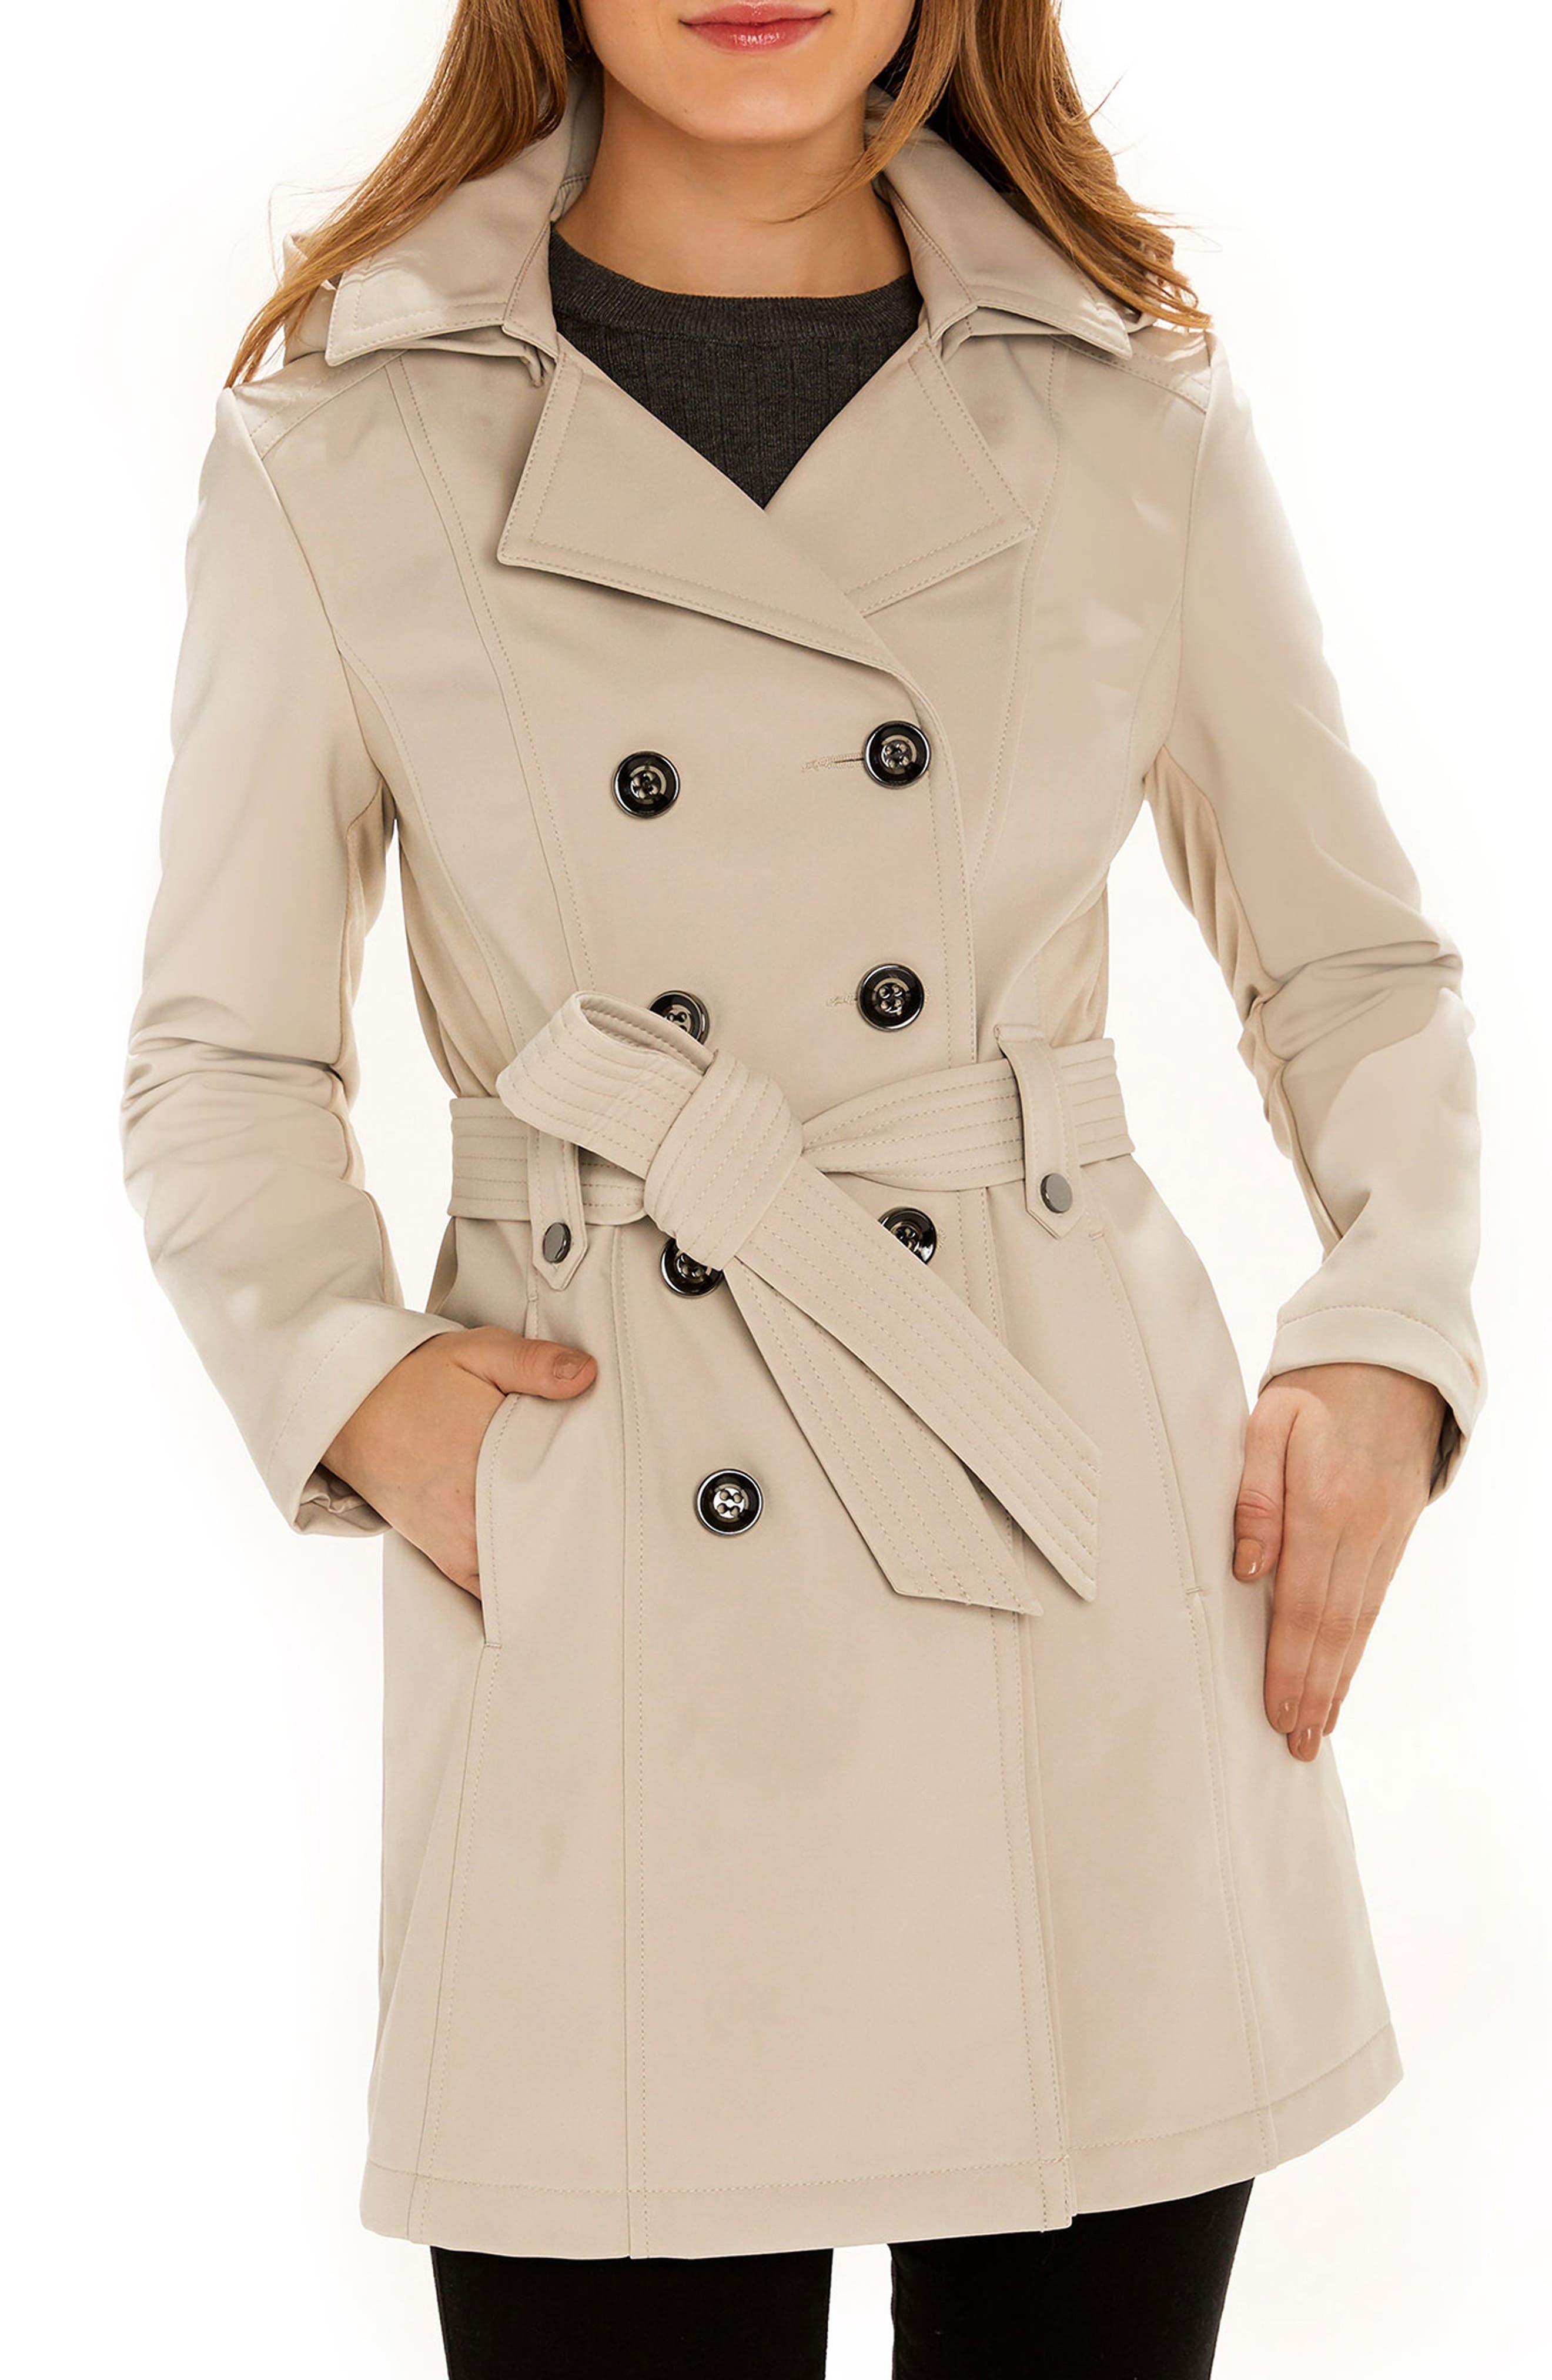 Women's Beige Raincoats, Rain Jackets, & Trench Coats   Nordstrom Rack